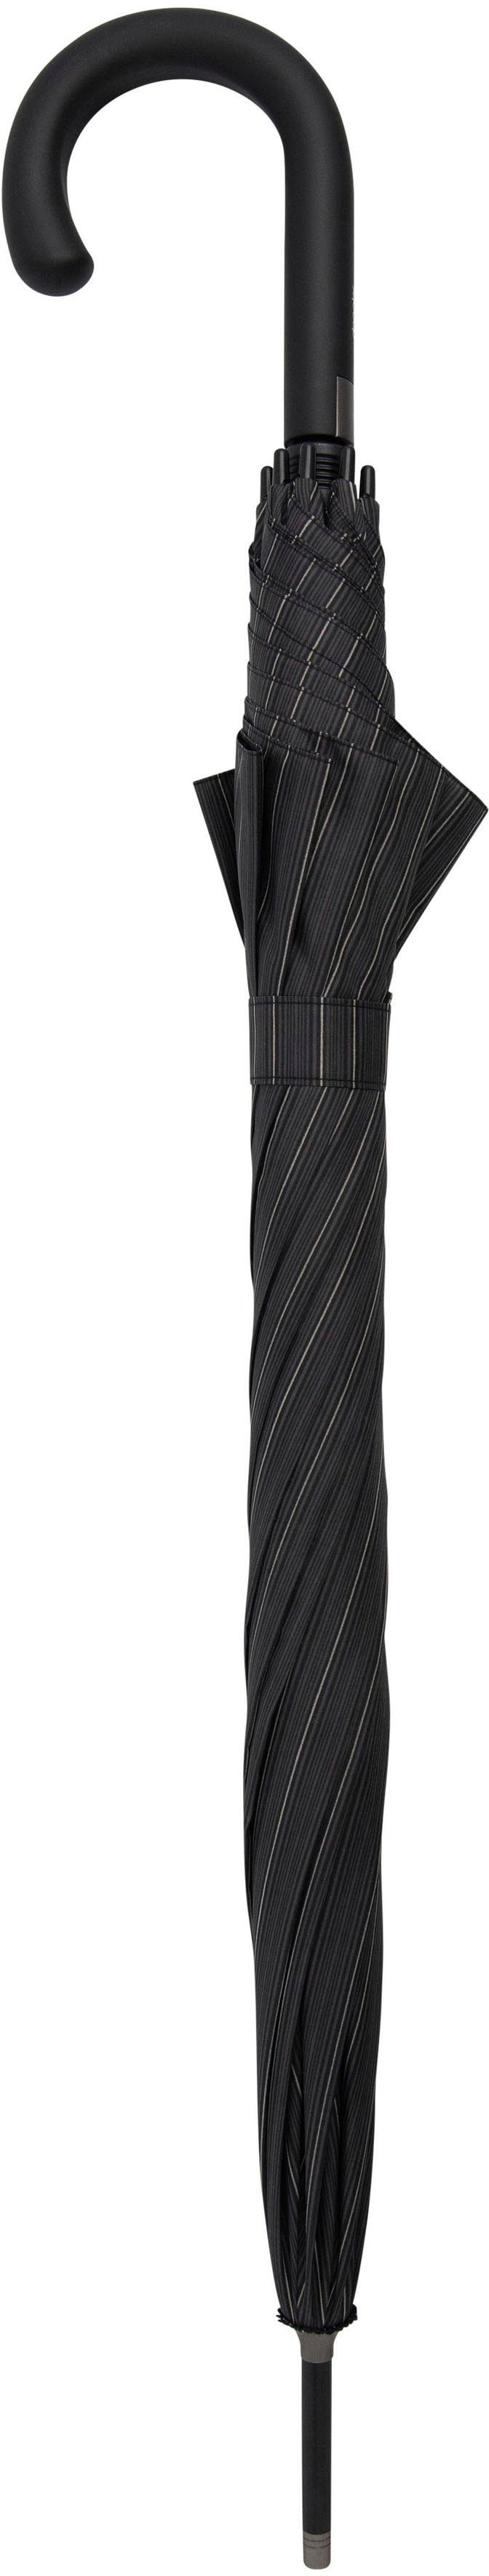 Langregenschirm stripe, classy Big Fiber AC Partnerschirm doppler® Flex